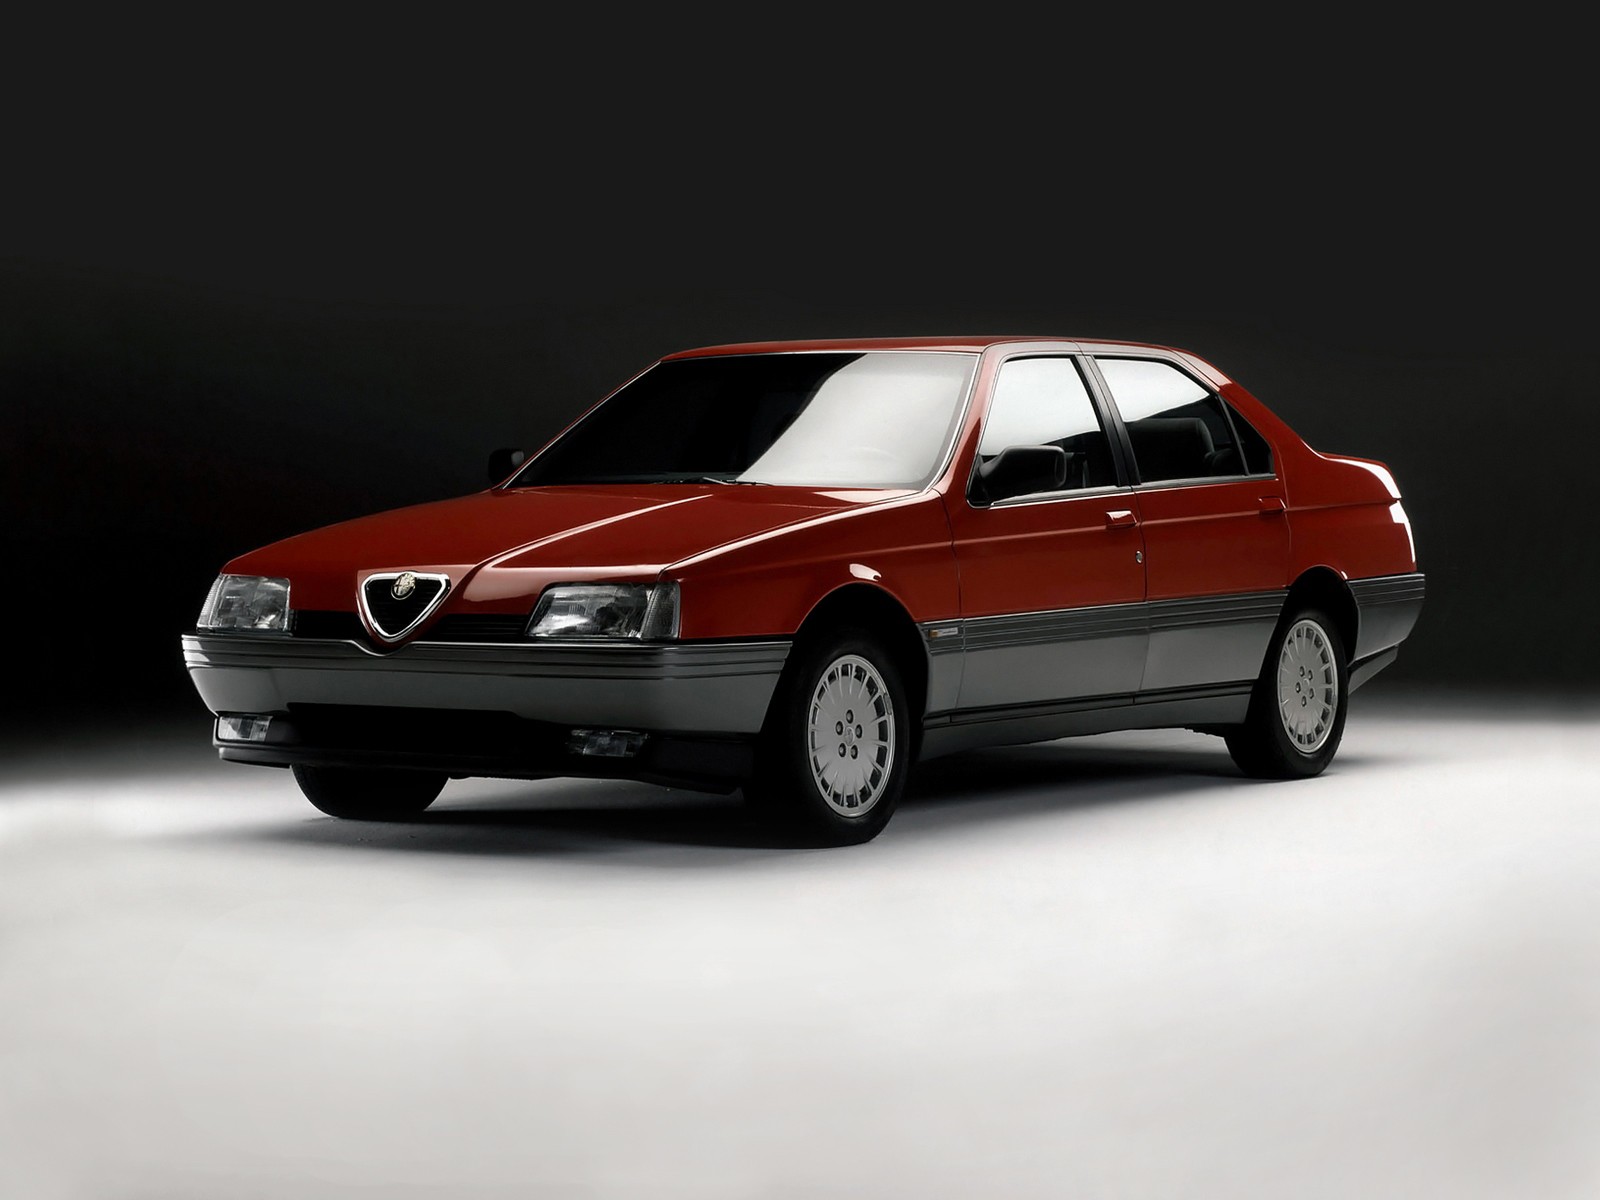 Alfa Romeo 164 - ლამაზი მრავალი თვალსაზრისით